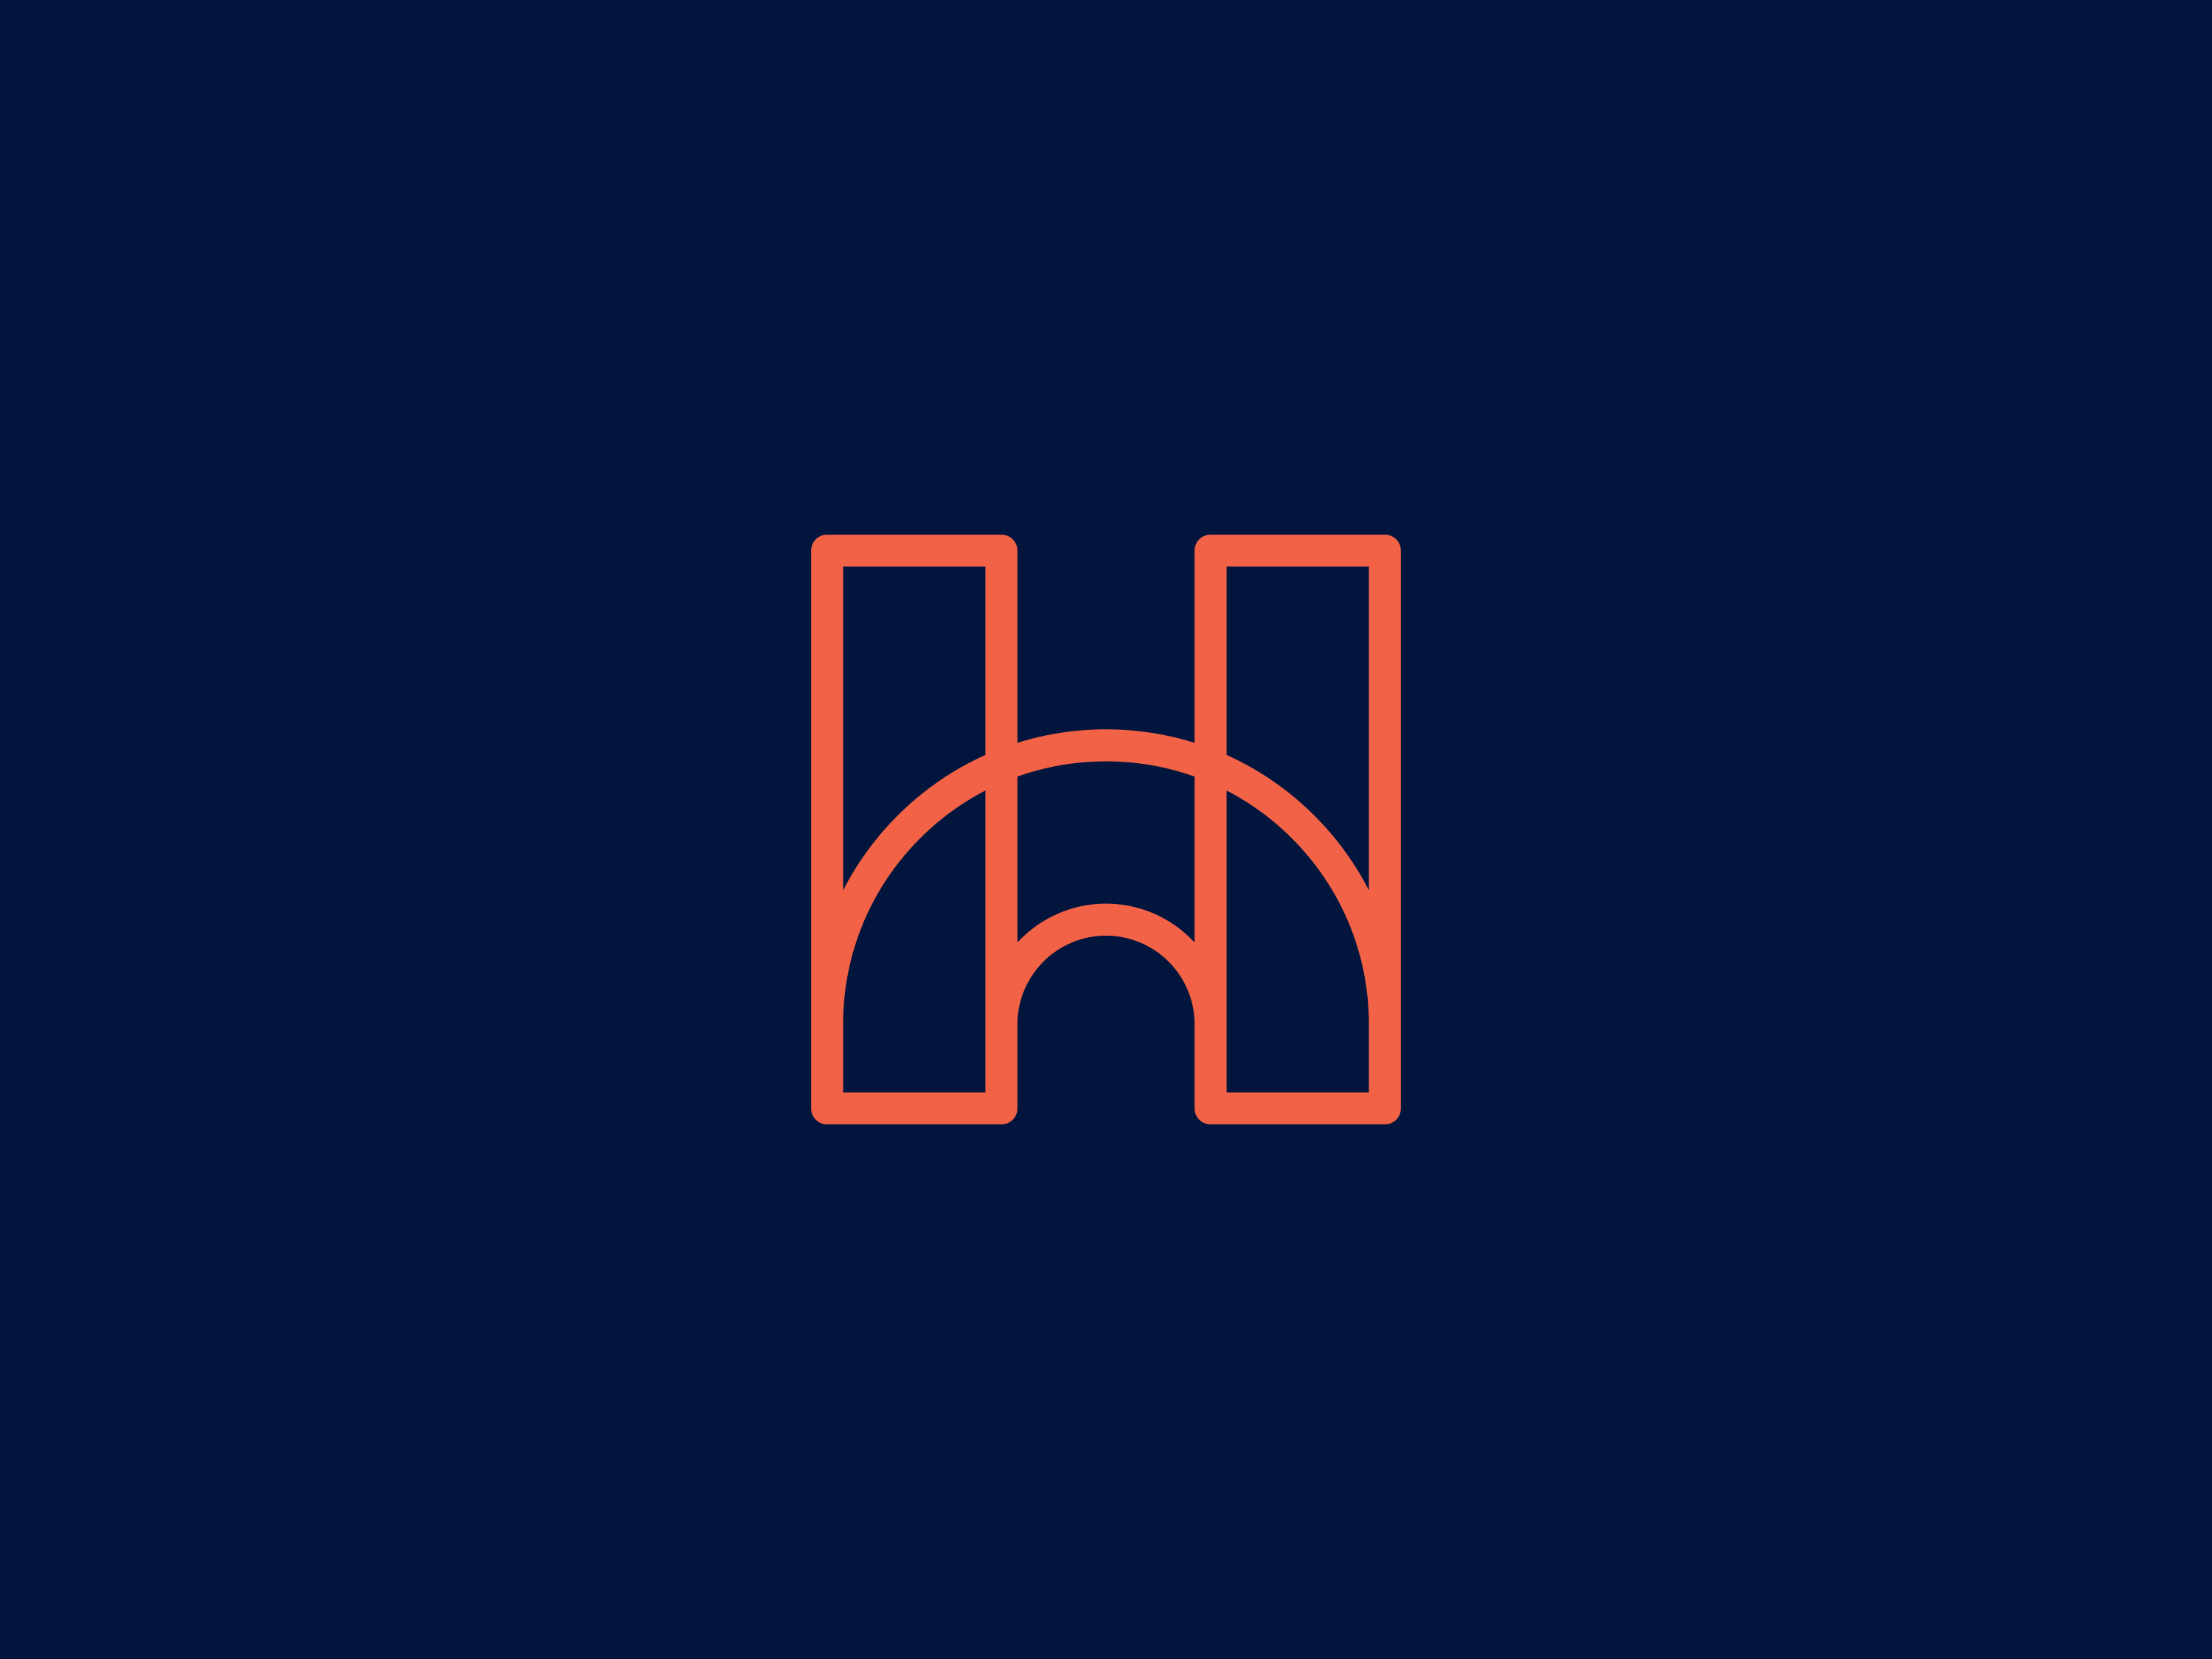 HomeLife Media brand identity brand mark branding bridge geometric h icon letter lettermark logo marketing media monogram outline pet symbol